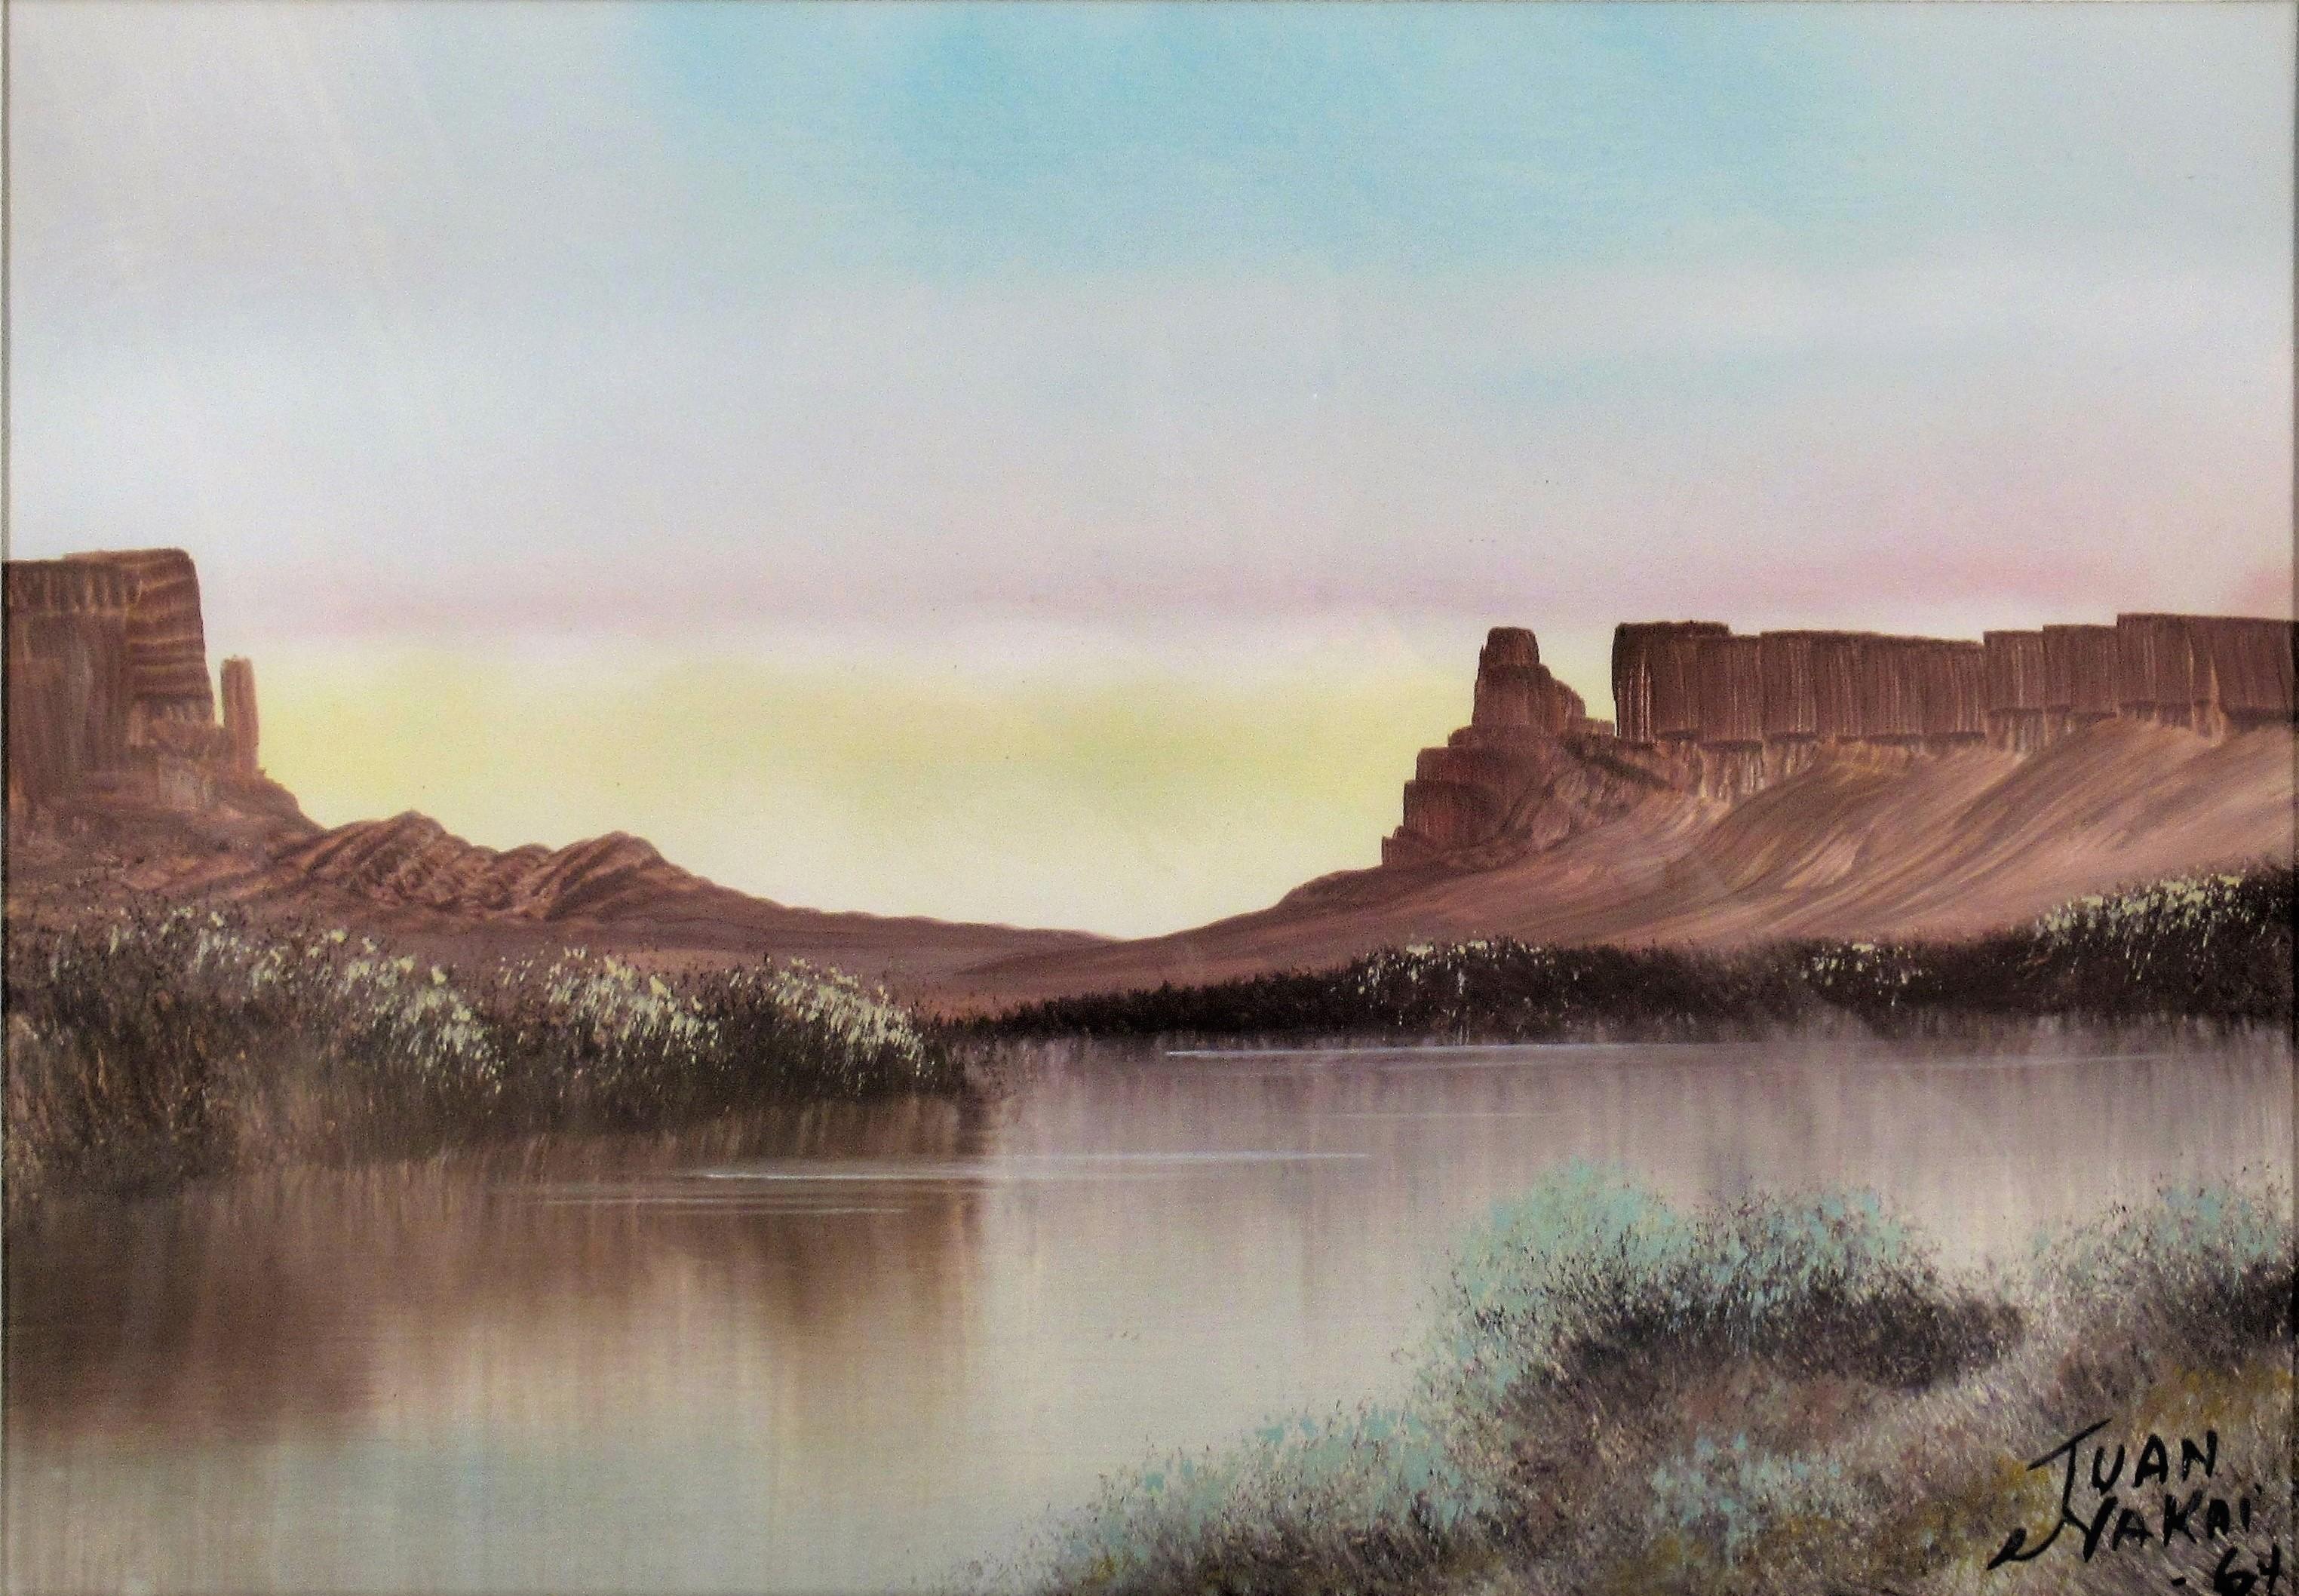 San Joaquin River, New Mexico - Art by Juan Nakai